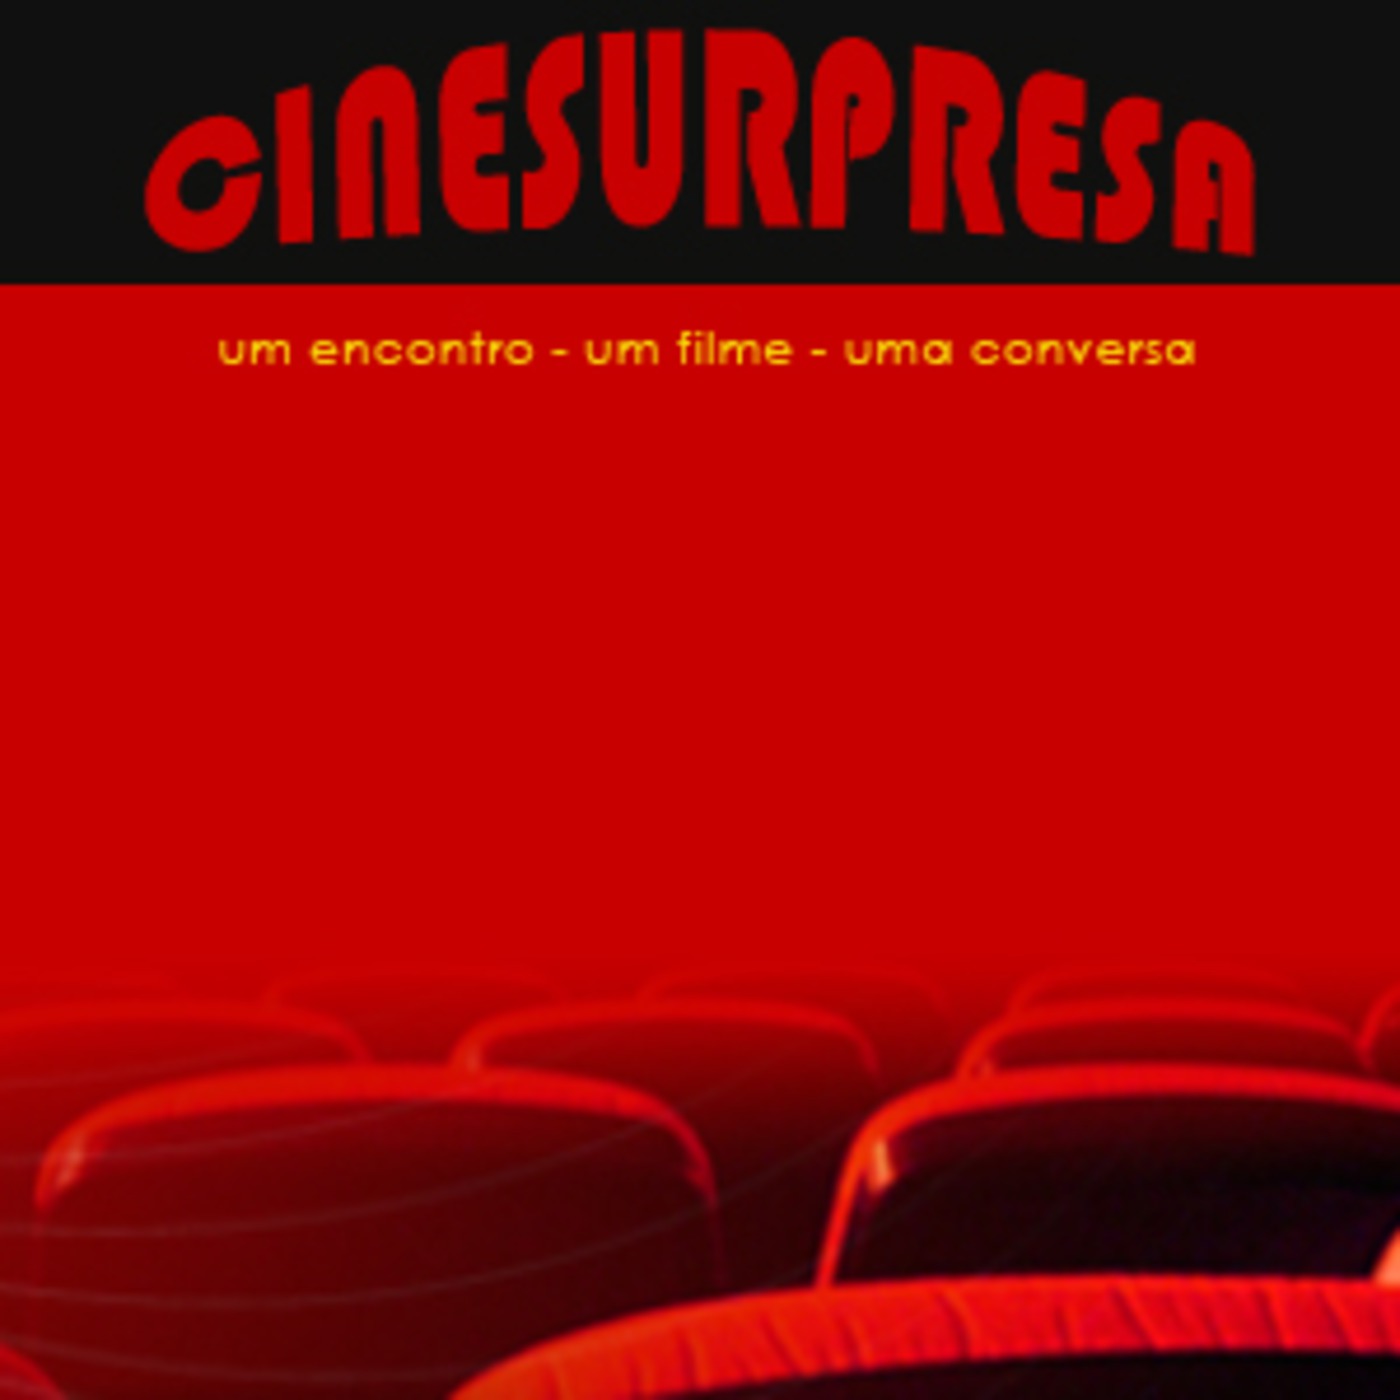 CinesurpresaCast